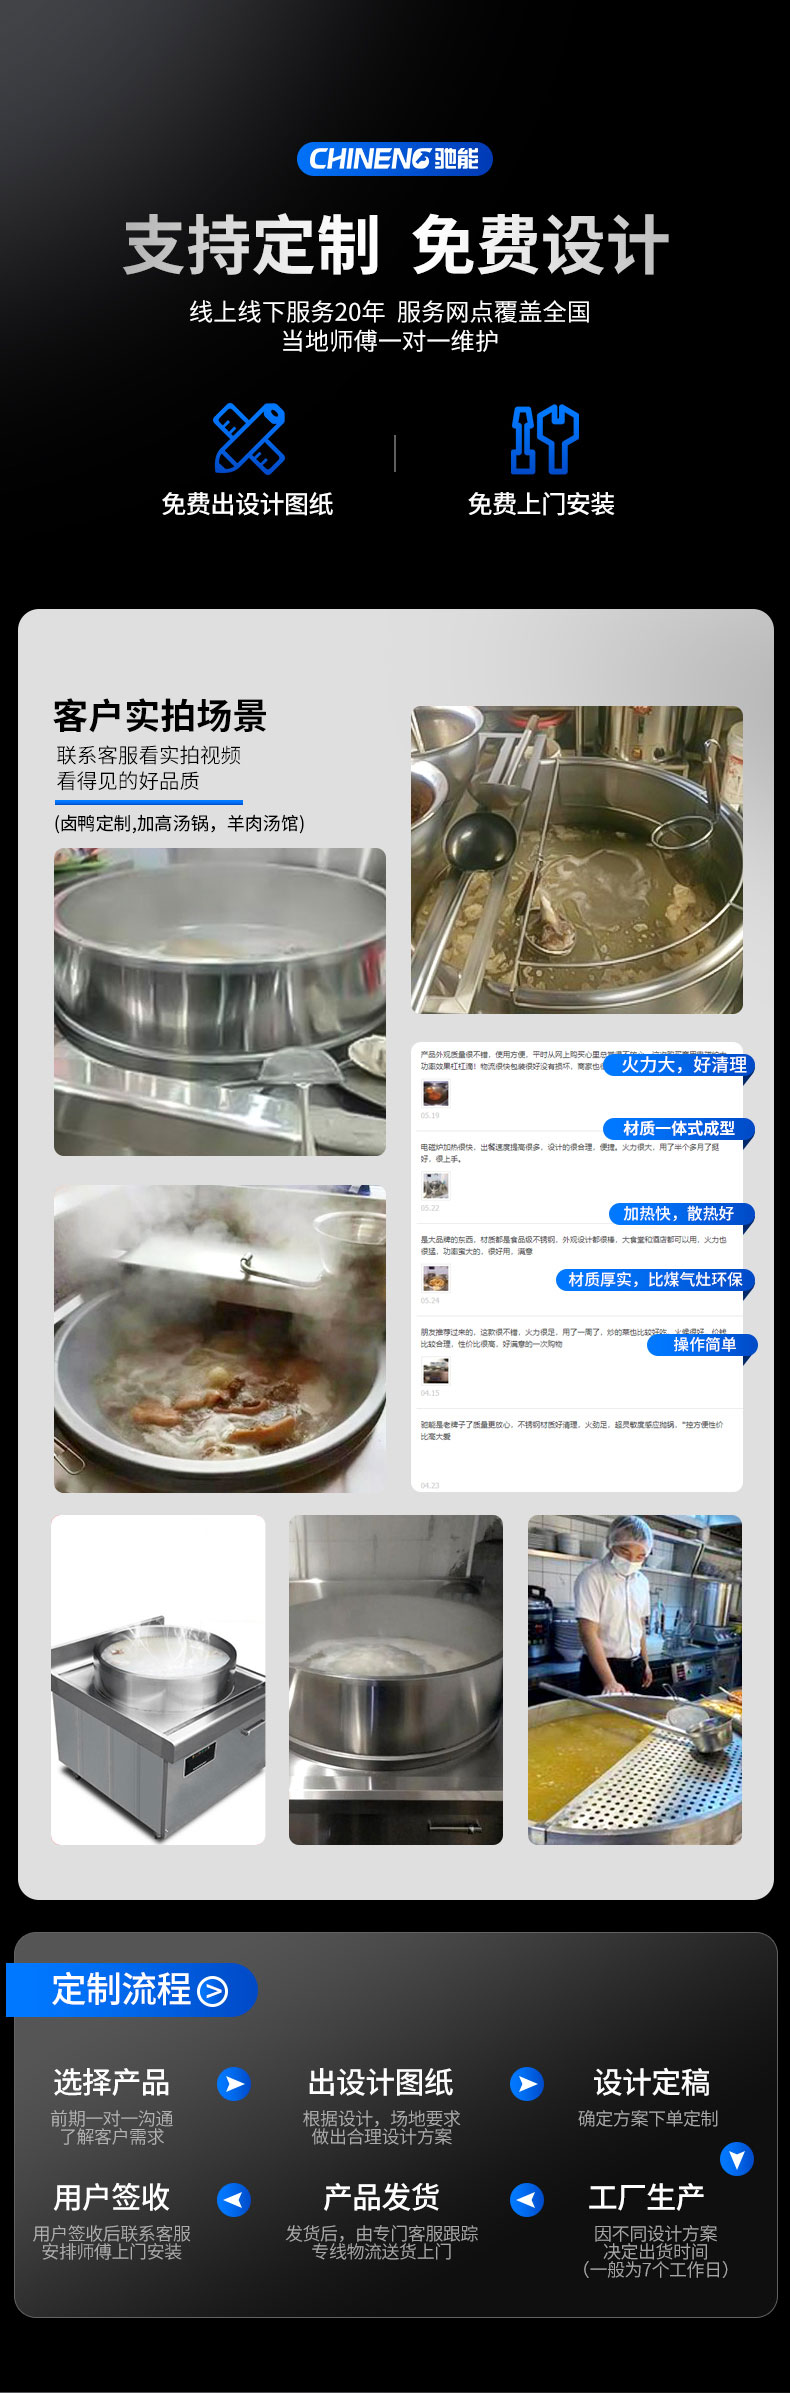 羊肉汤锅定制流程